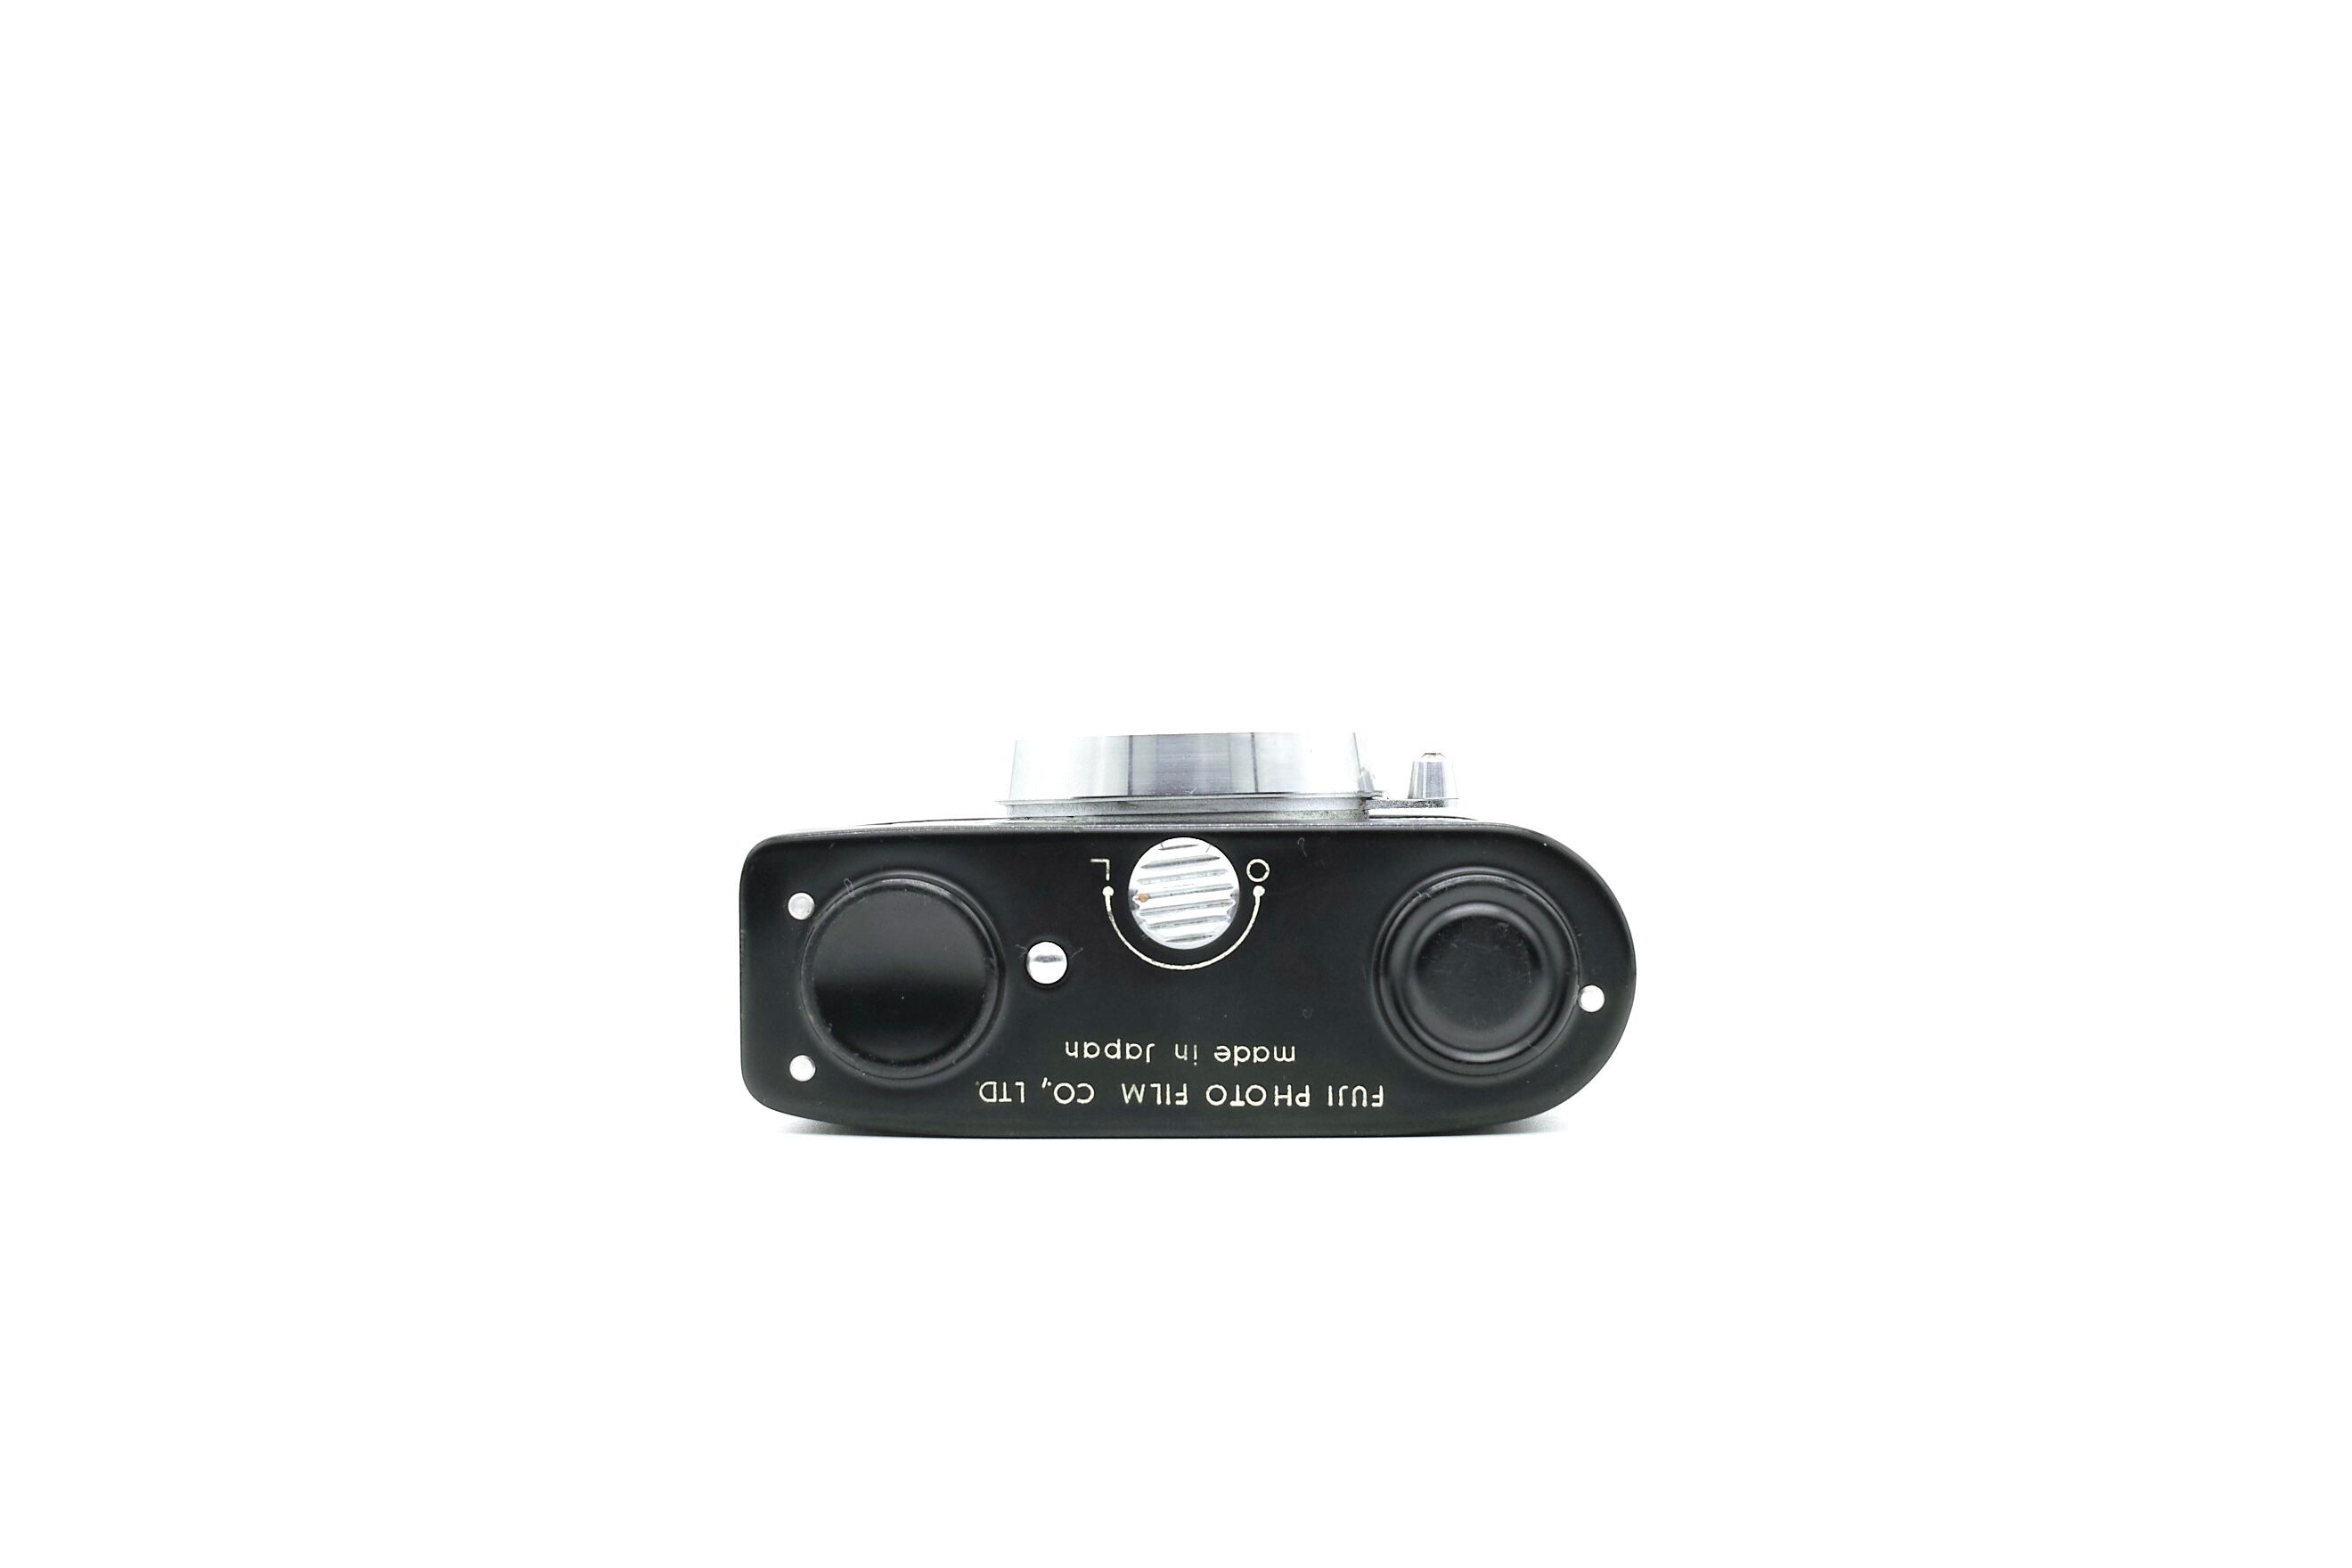 205801 試写済 フジカ ミニ fujica mini ハーフカメラ が大特価